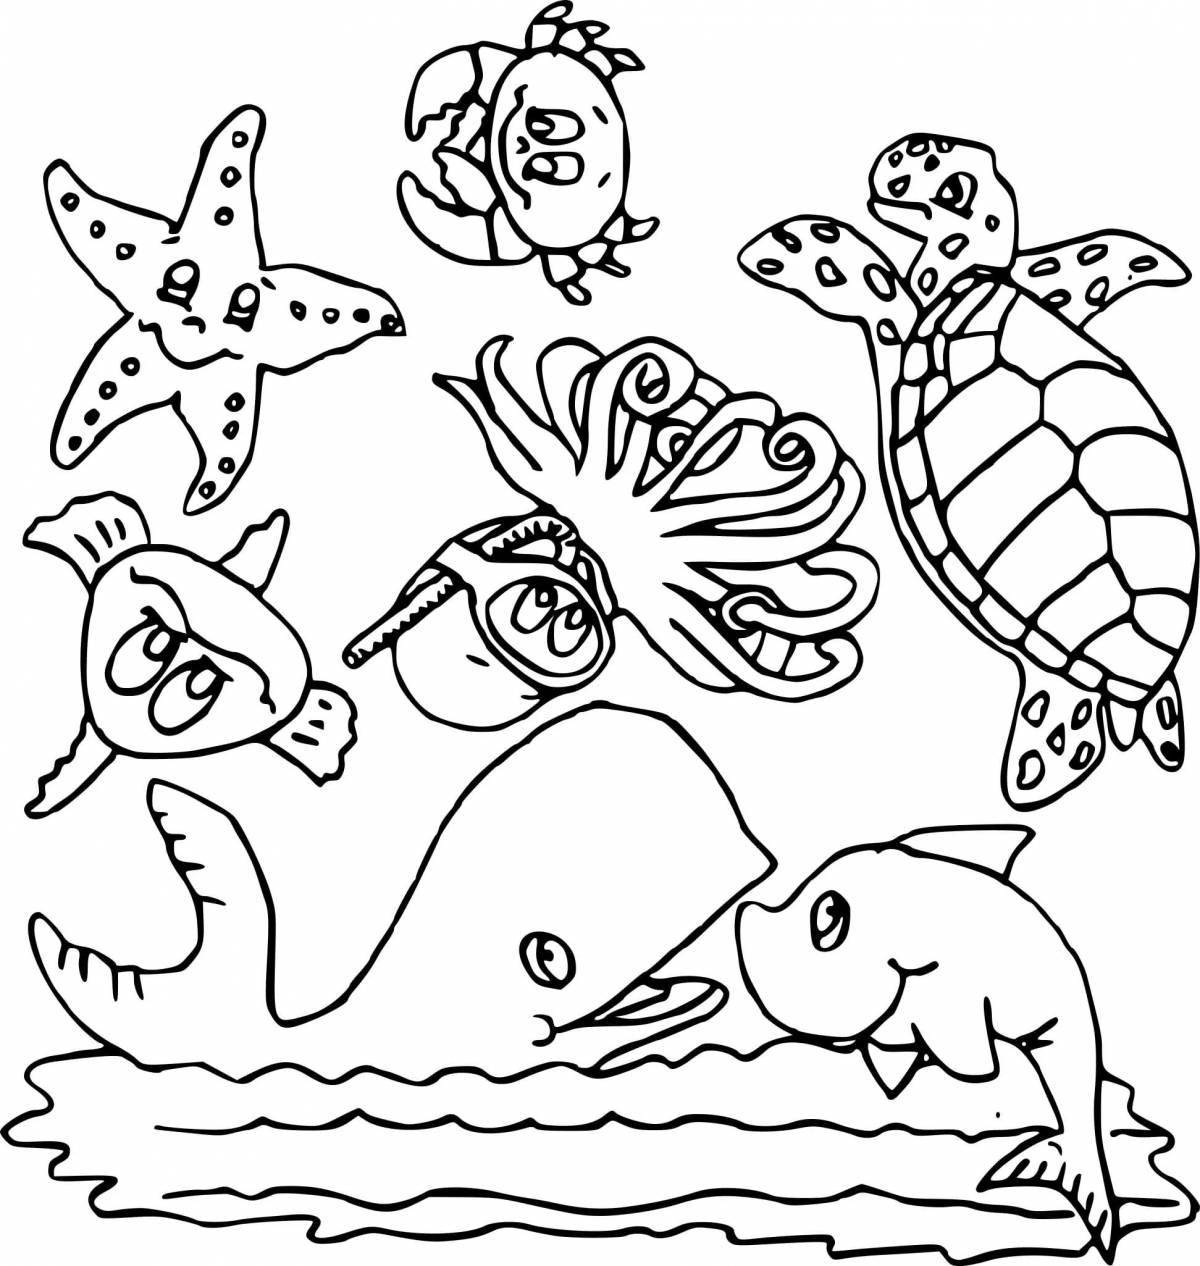 Удивительная страница-раскраска морской жизни для детей 3-4 лет